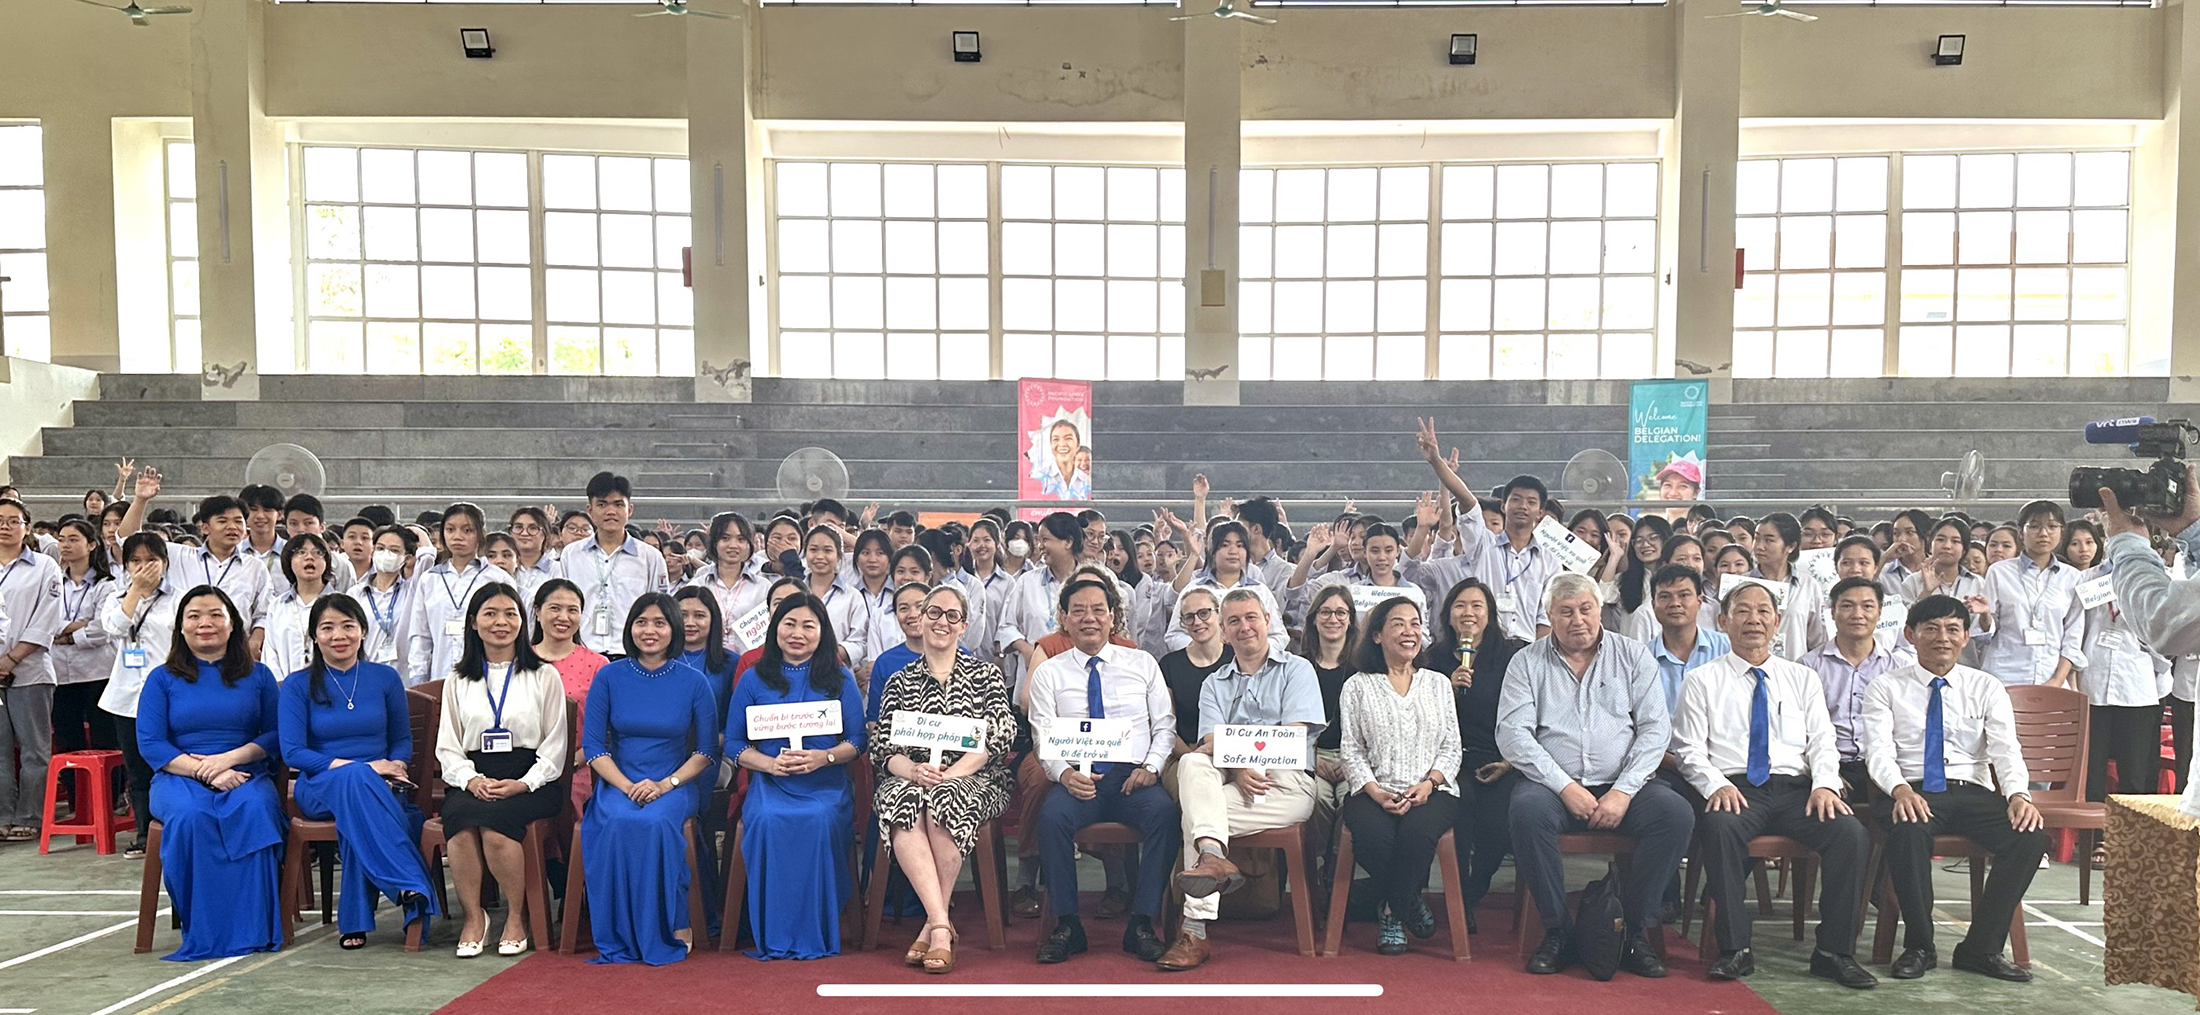 Bộ trưởng phụ trách tị nạn Vương quốc Bỉ, Đại sứ Bỉ tại Việt Nam trao quà học bổng và hướng dẫn cho học sinh Trường THPT Nghi Lộc 1 về phòng chống buôn bán người.